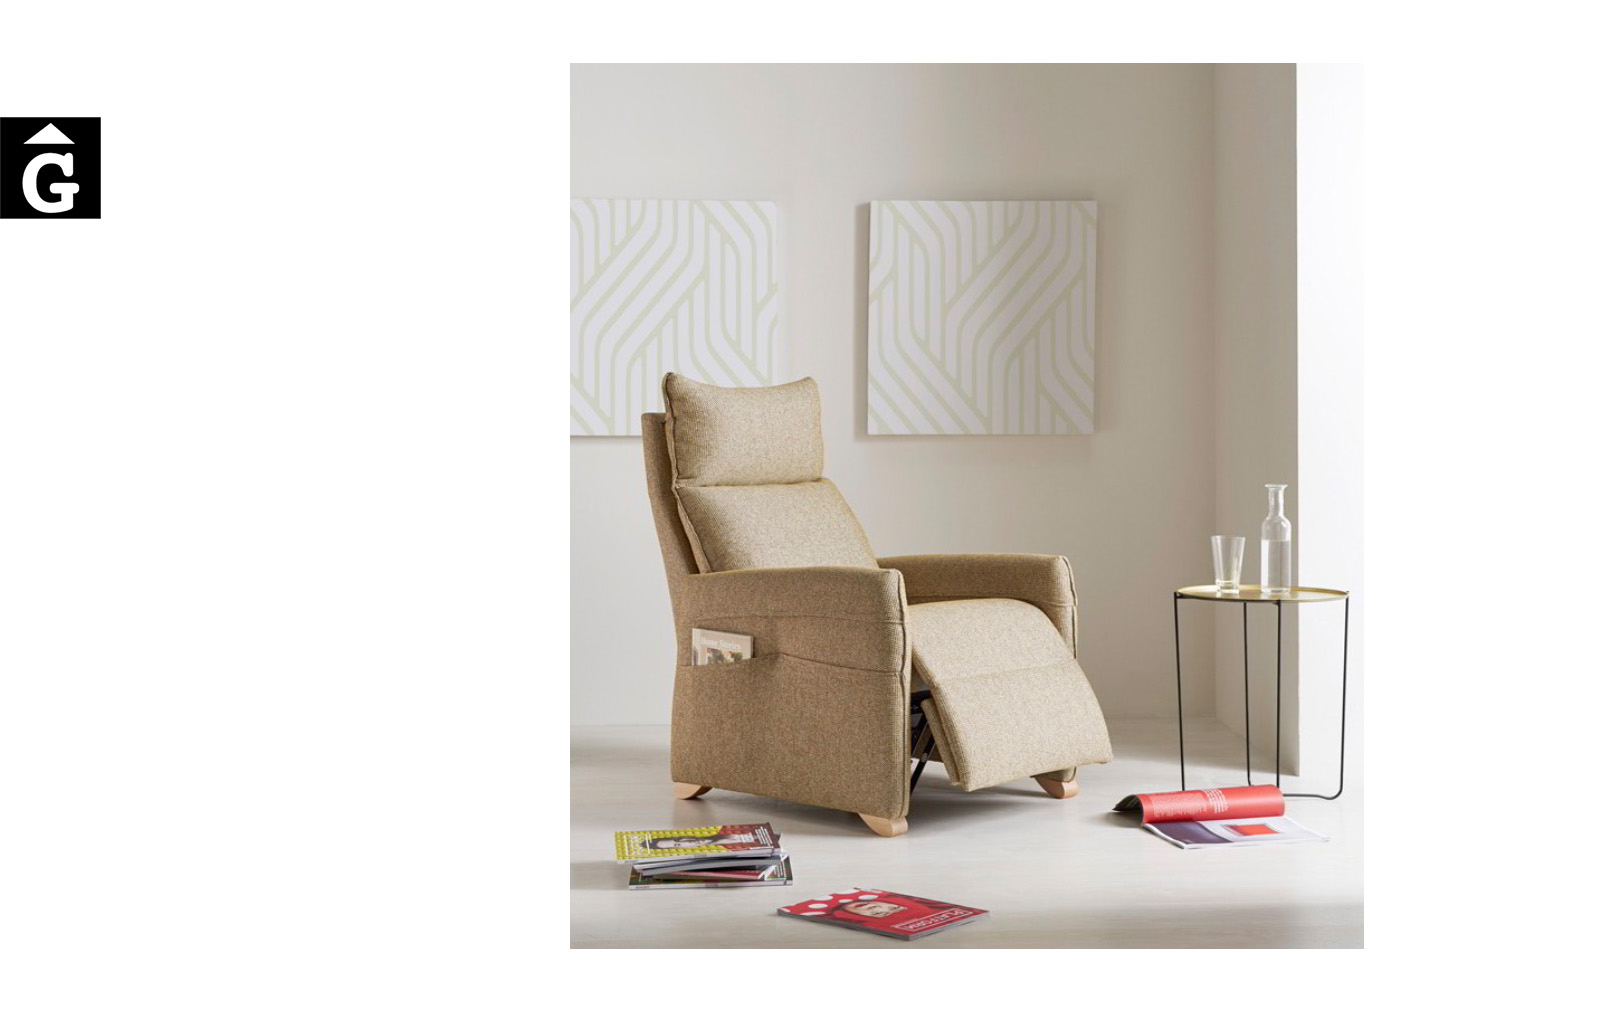 Butaca relax motoritzat Titan de Reyes Ordoñez Sofas disseny i qualitat alta distribuïdor oficial mobles Gifreu